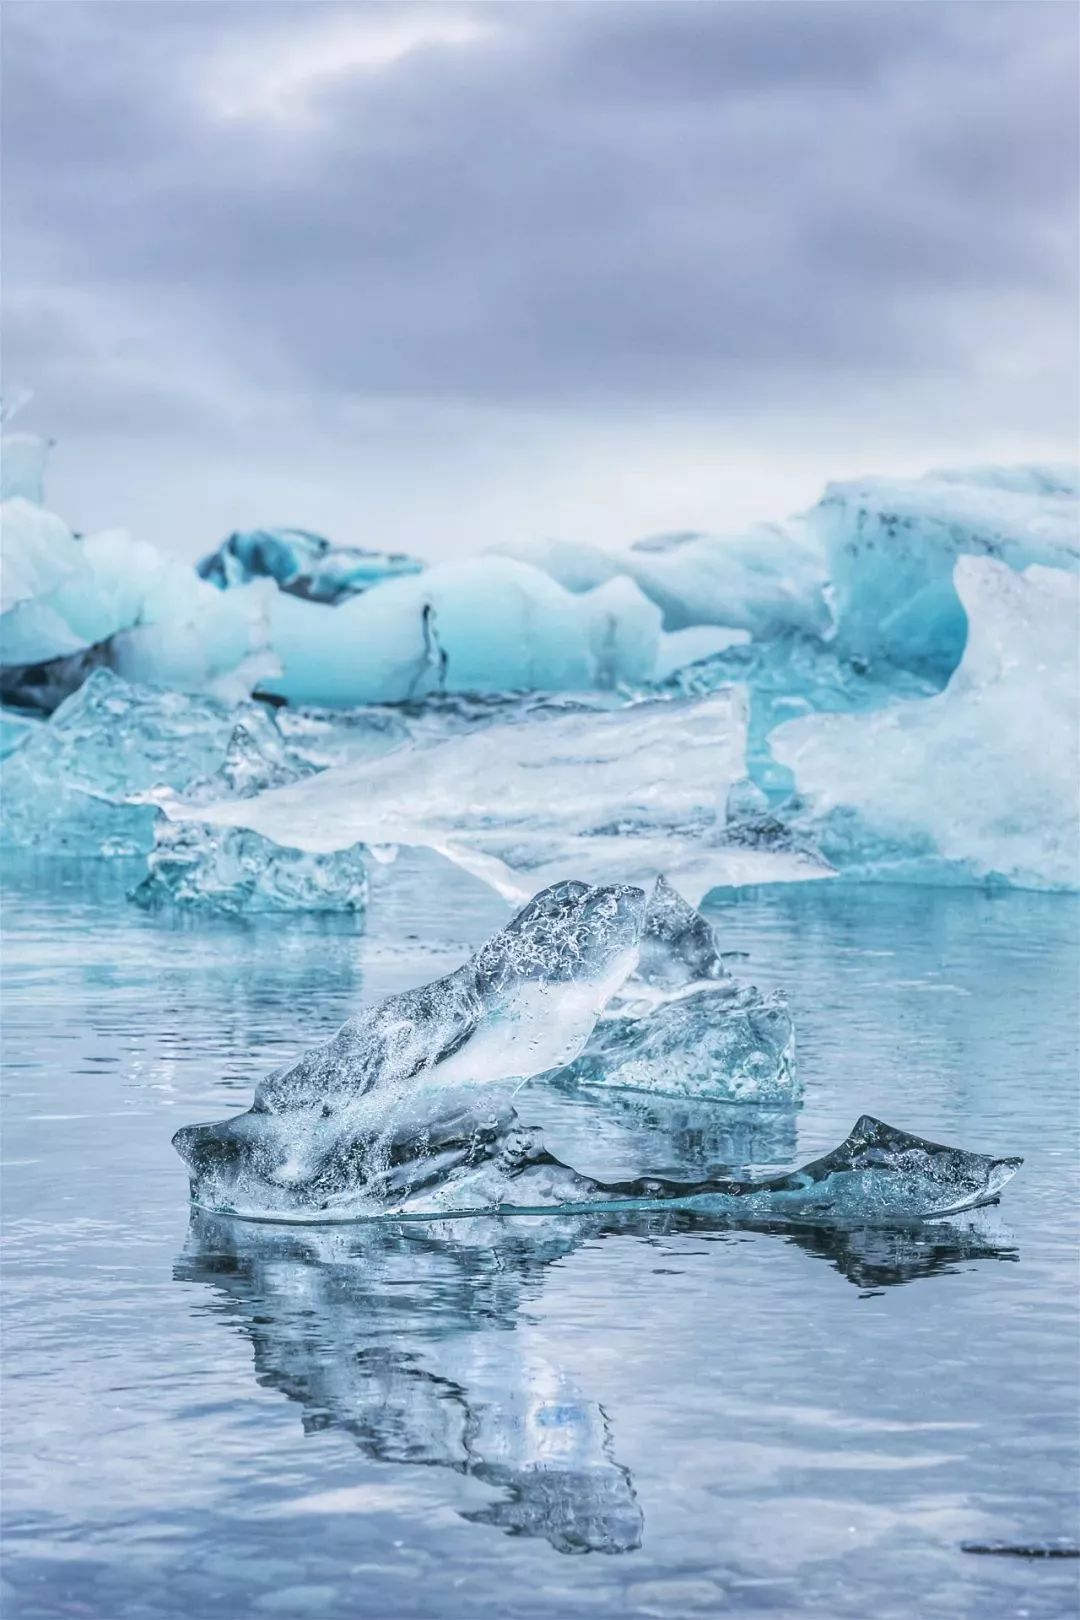 南极冰海岛 库存照片. 图片 包括有 夏天, 海运, 海岛, 极性, 冰山, 本质, 冷静, 行程, 浮动 - 15834482